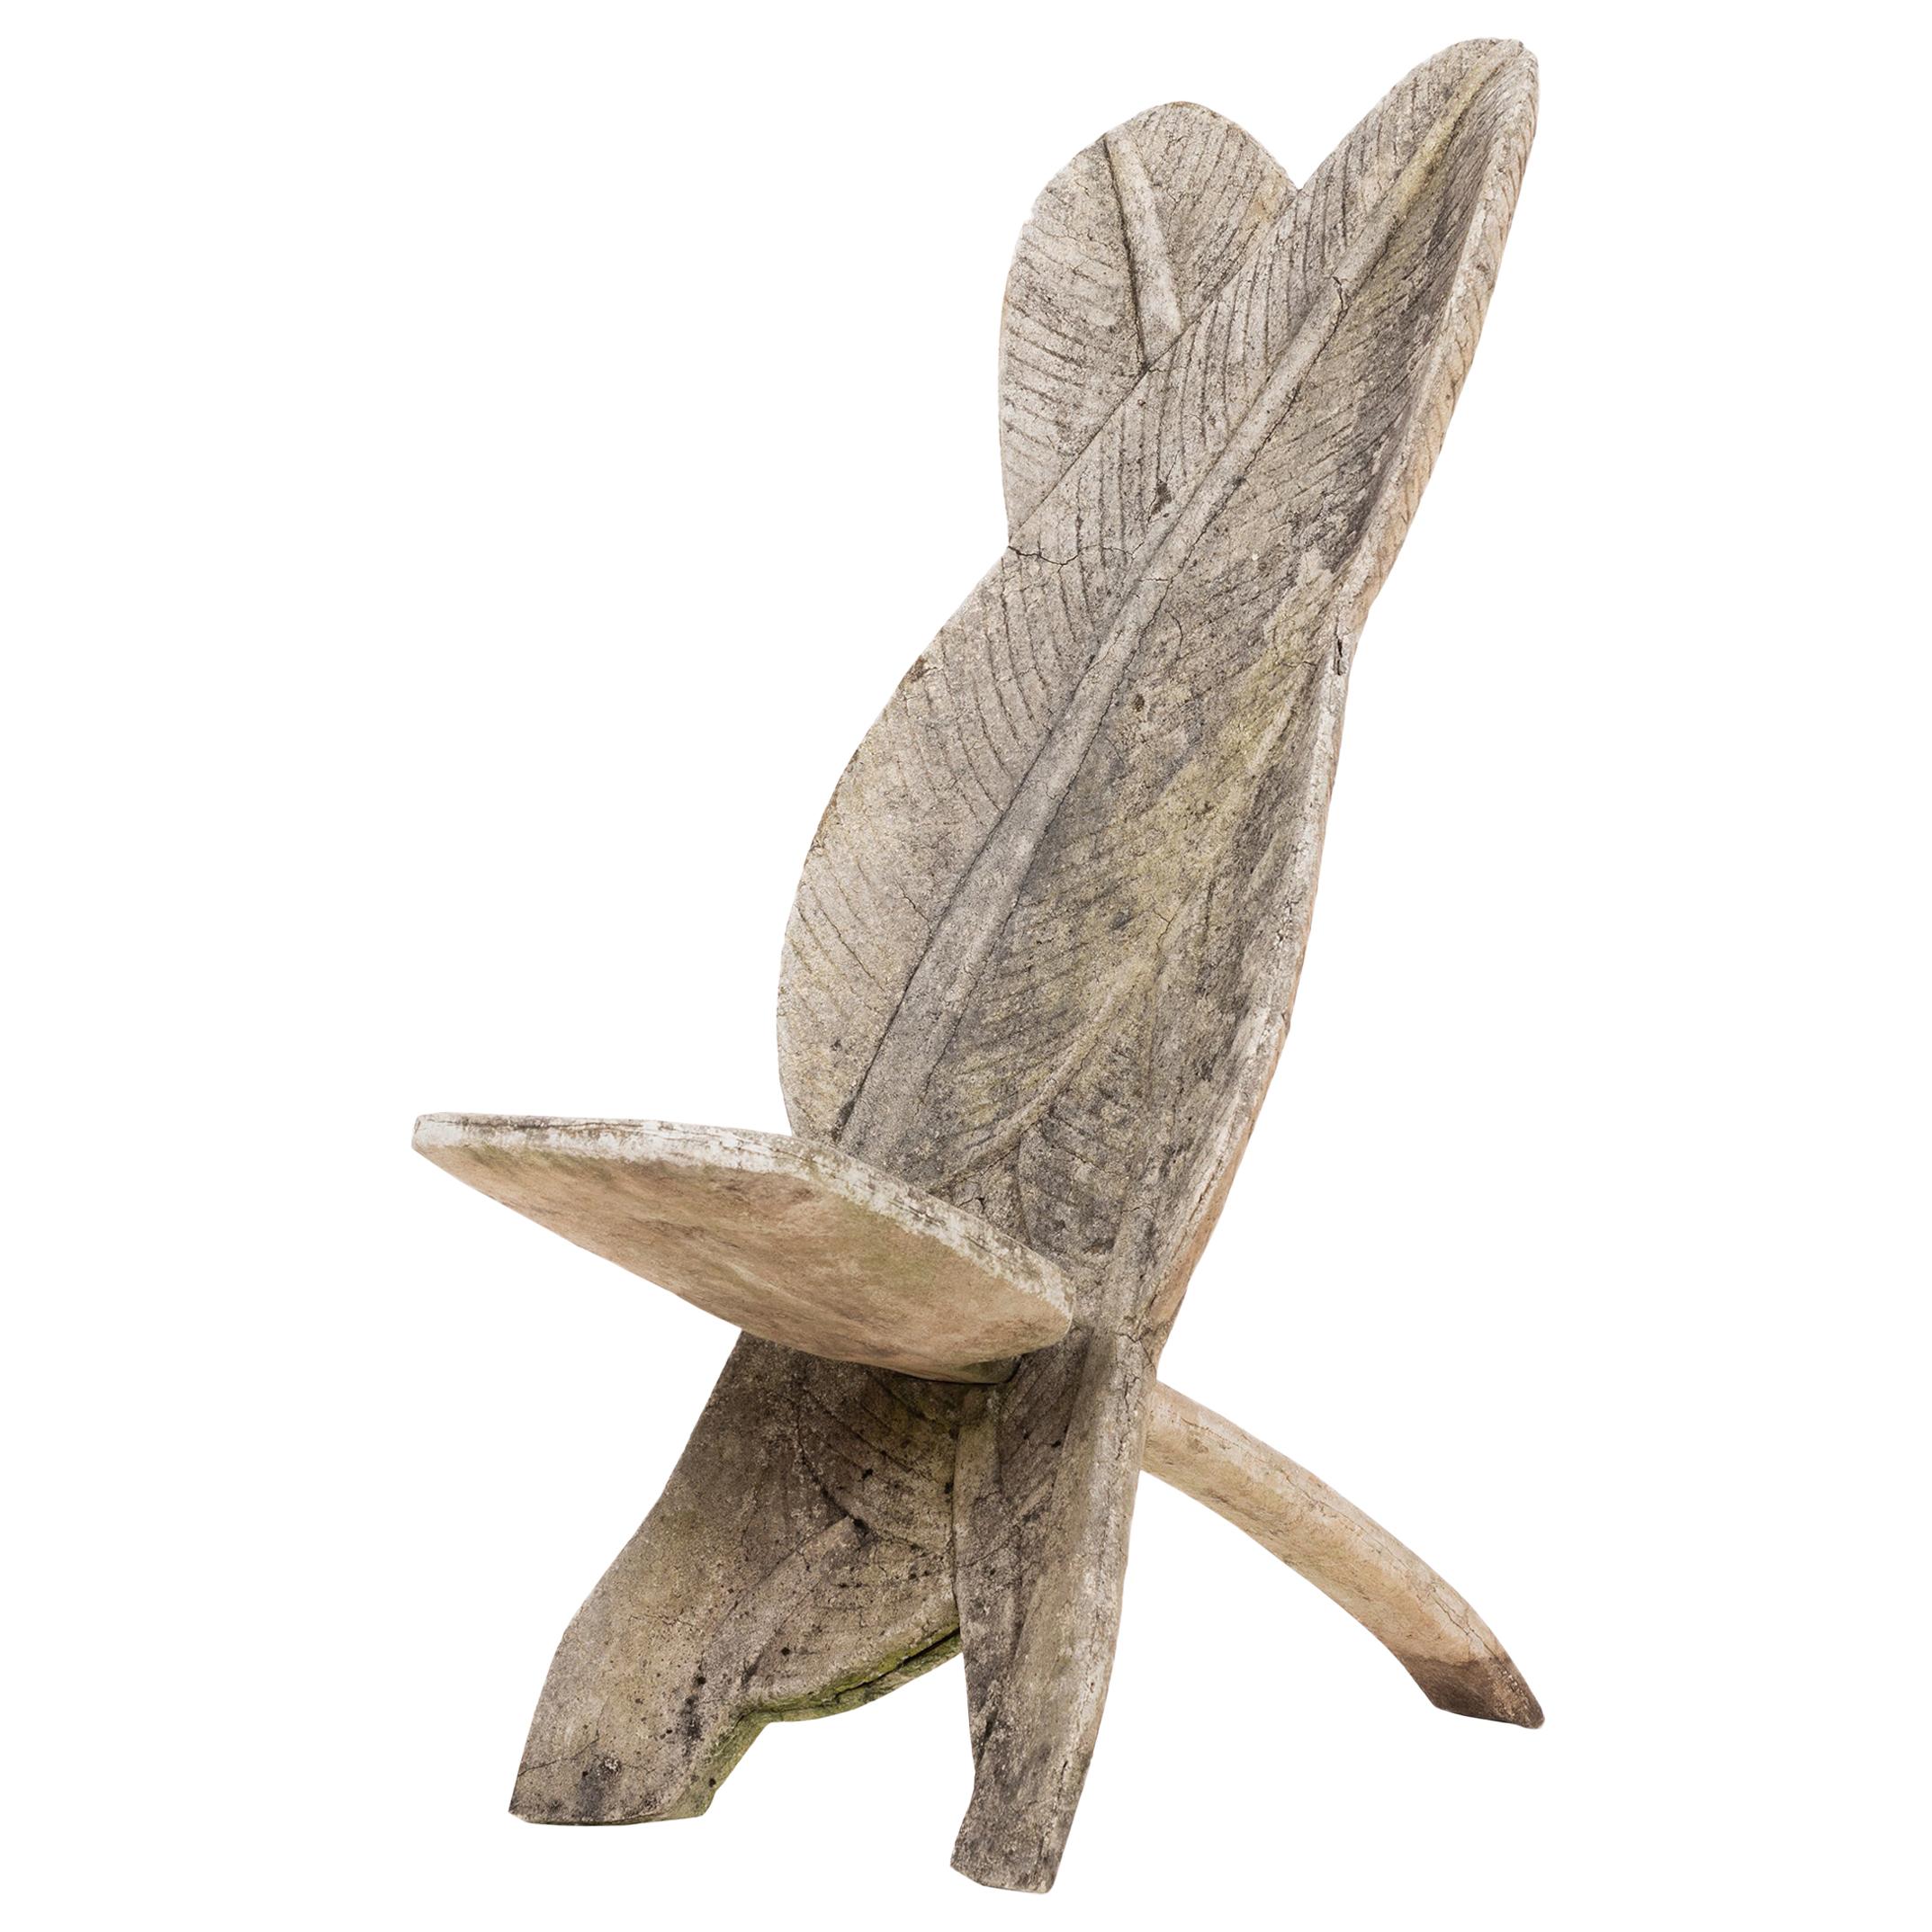 Folk Art Banana Leaf Chair